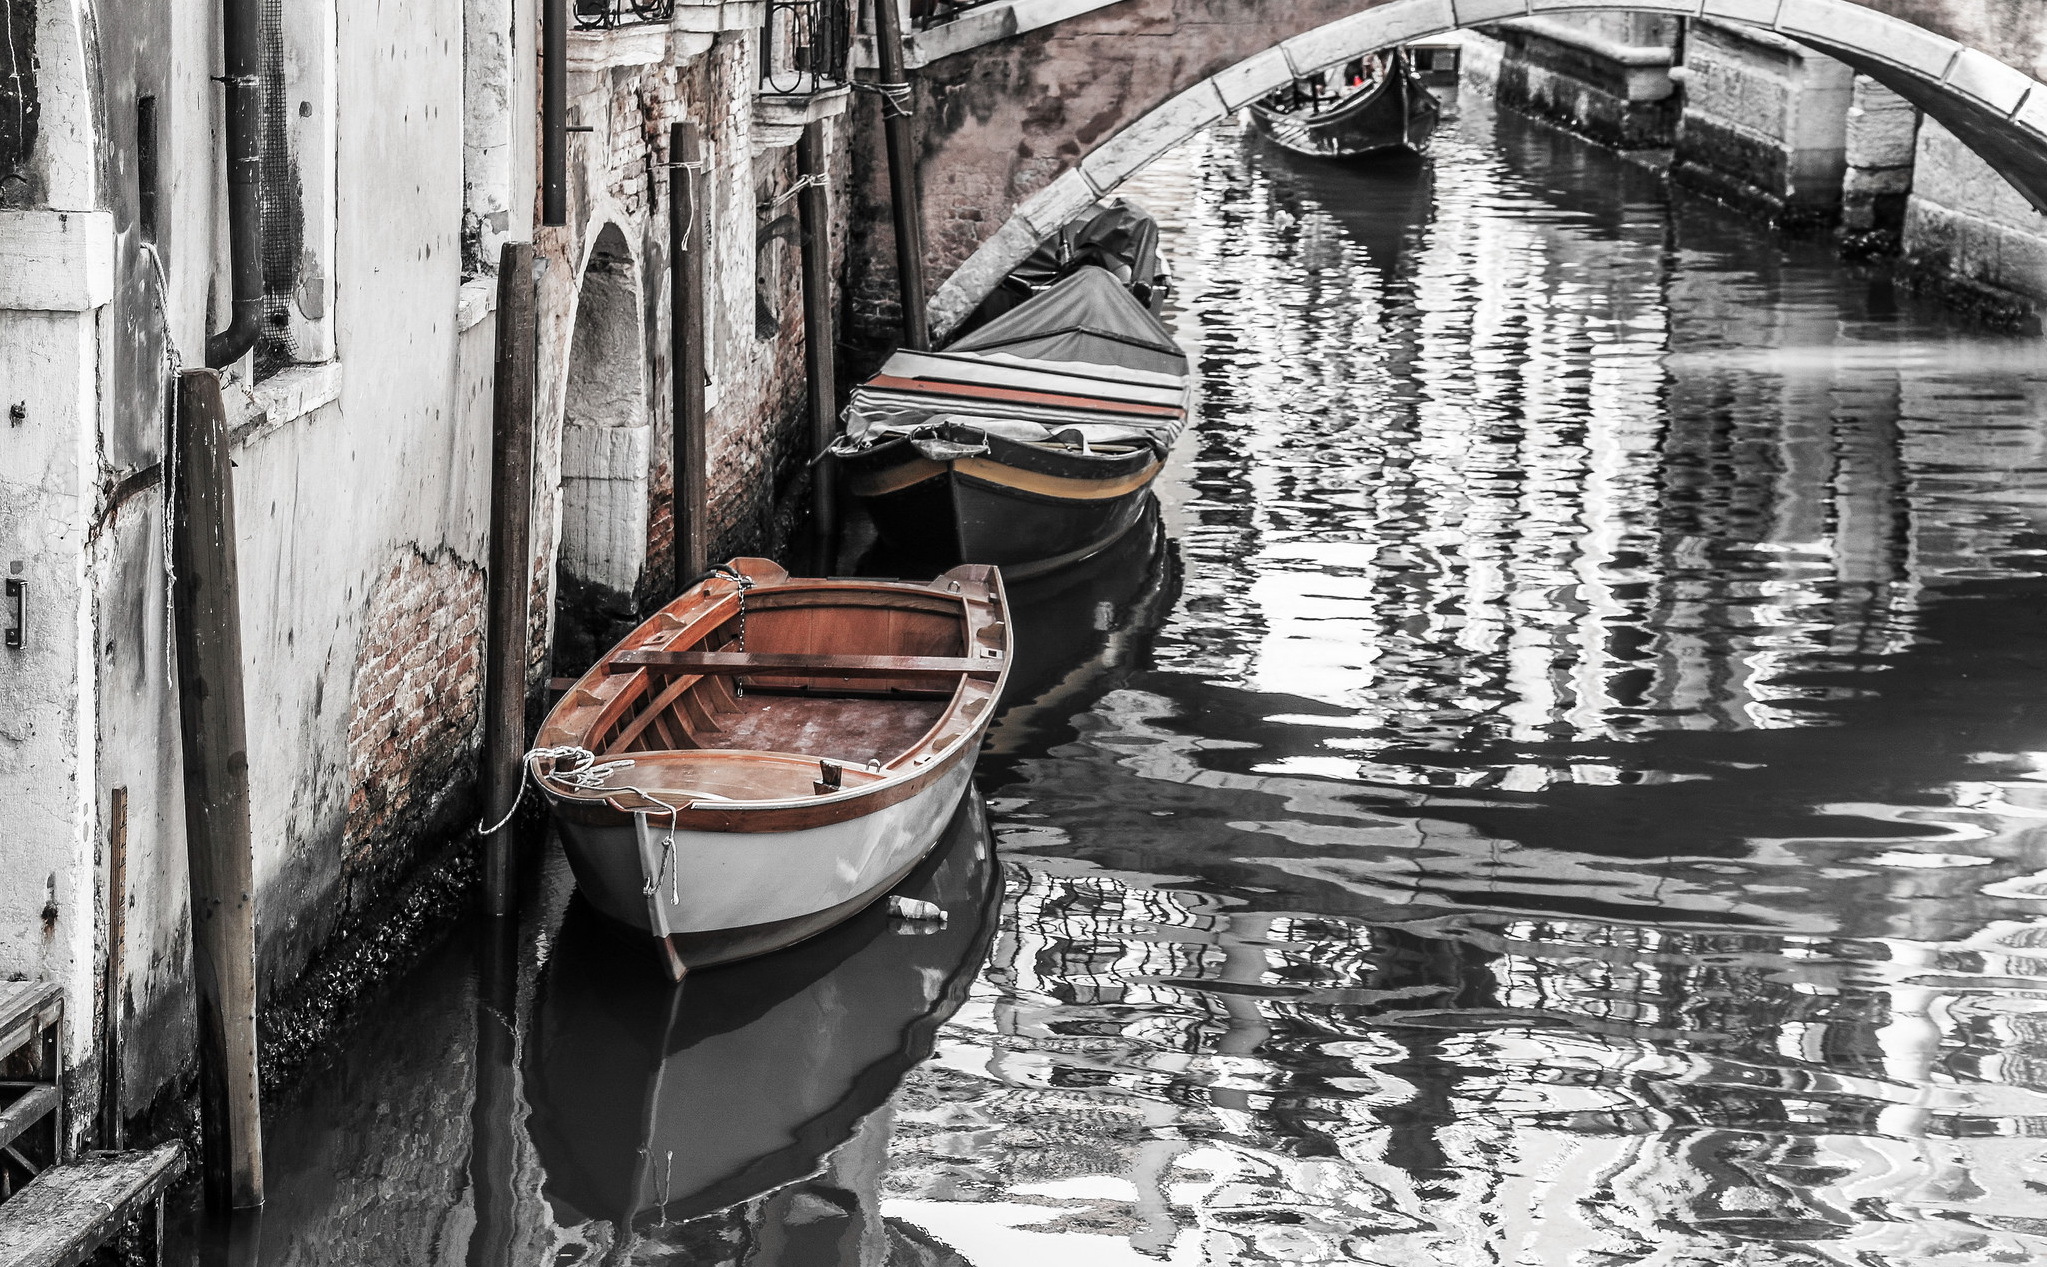 венеция черно белое фото